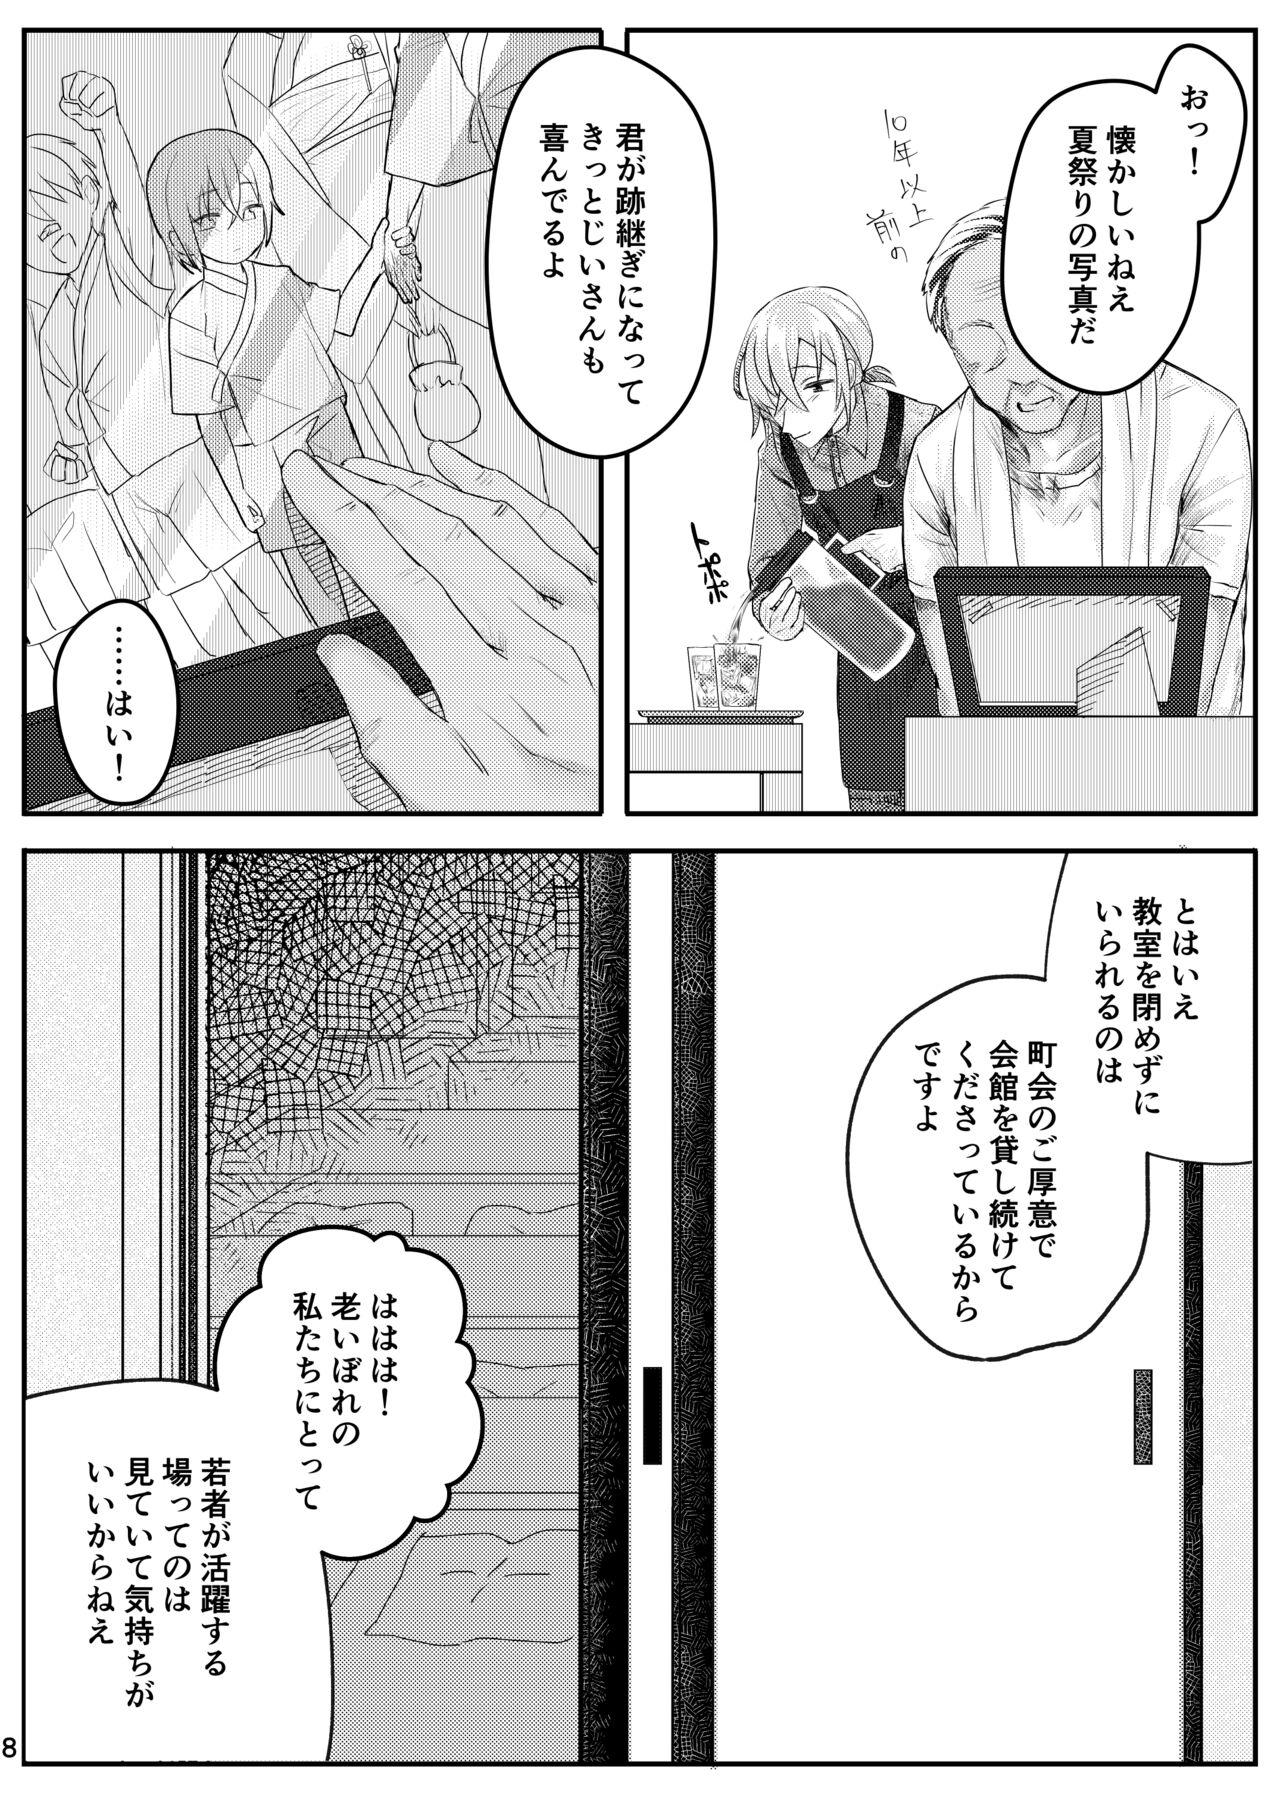 Cheat 書道教室のメスお兄さん Humiliation - Page 8